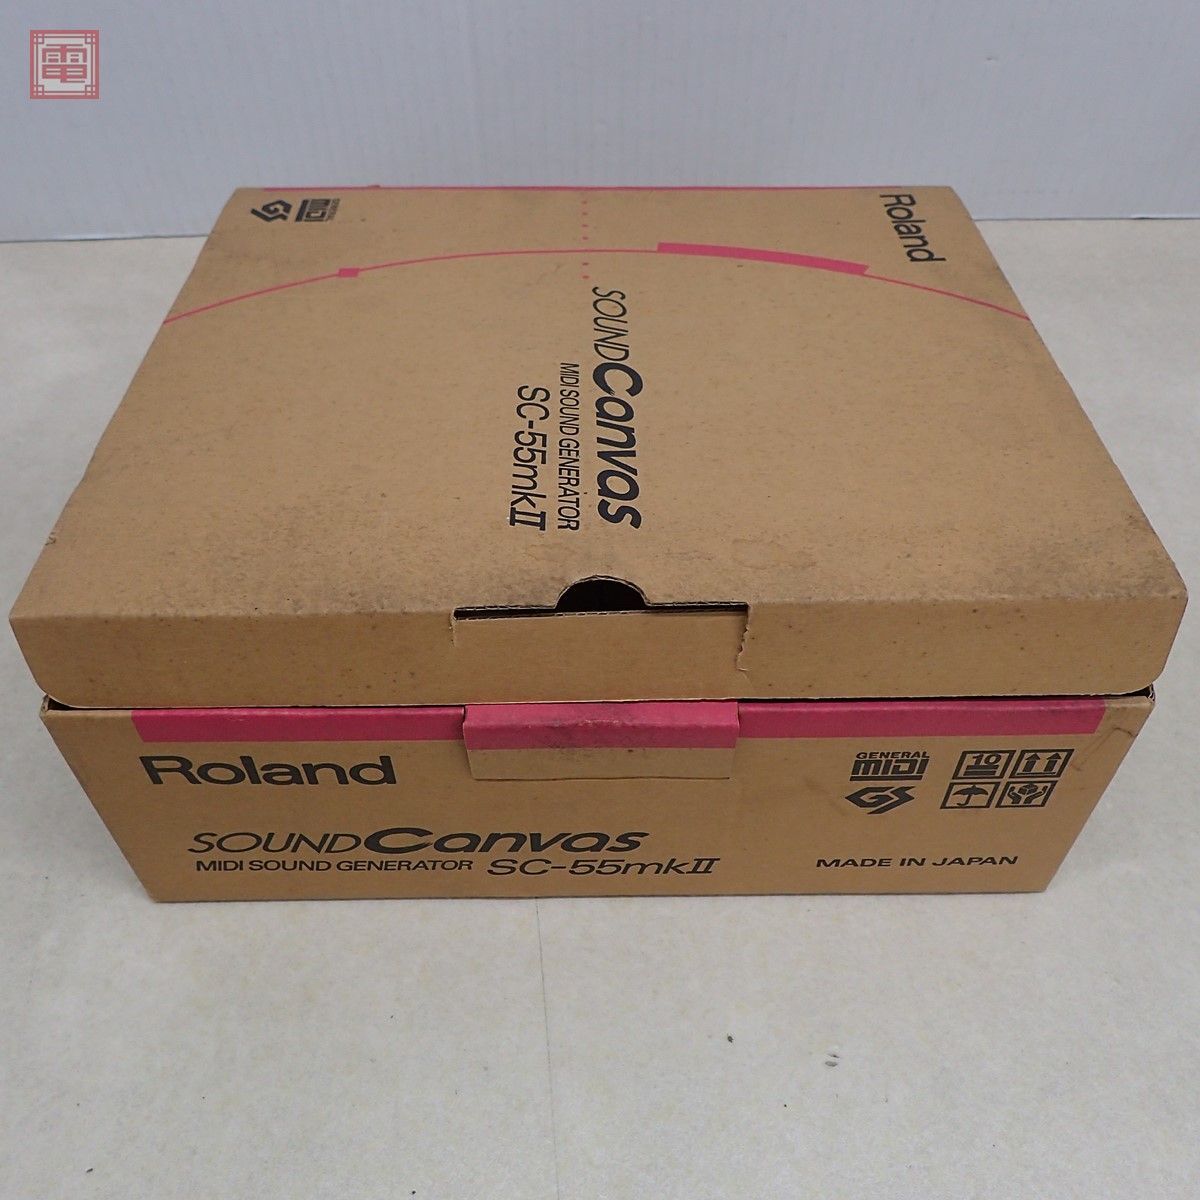  рабочий товар Roland MIDI аудио-модуль SOUND Canvas SC-55mkII звук парусина Roland коробка мнение кабель есть [20